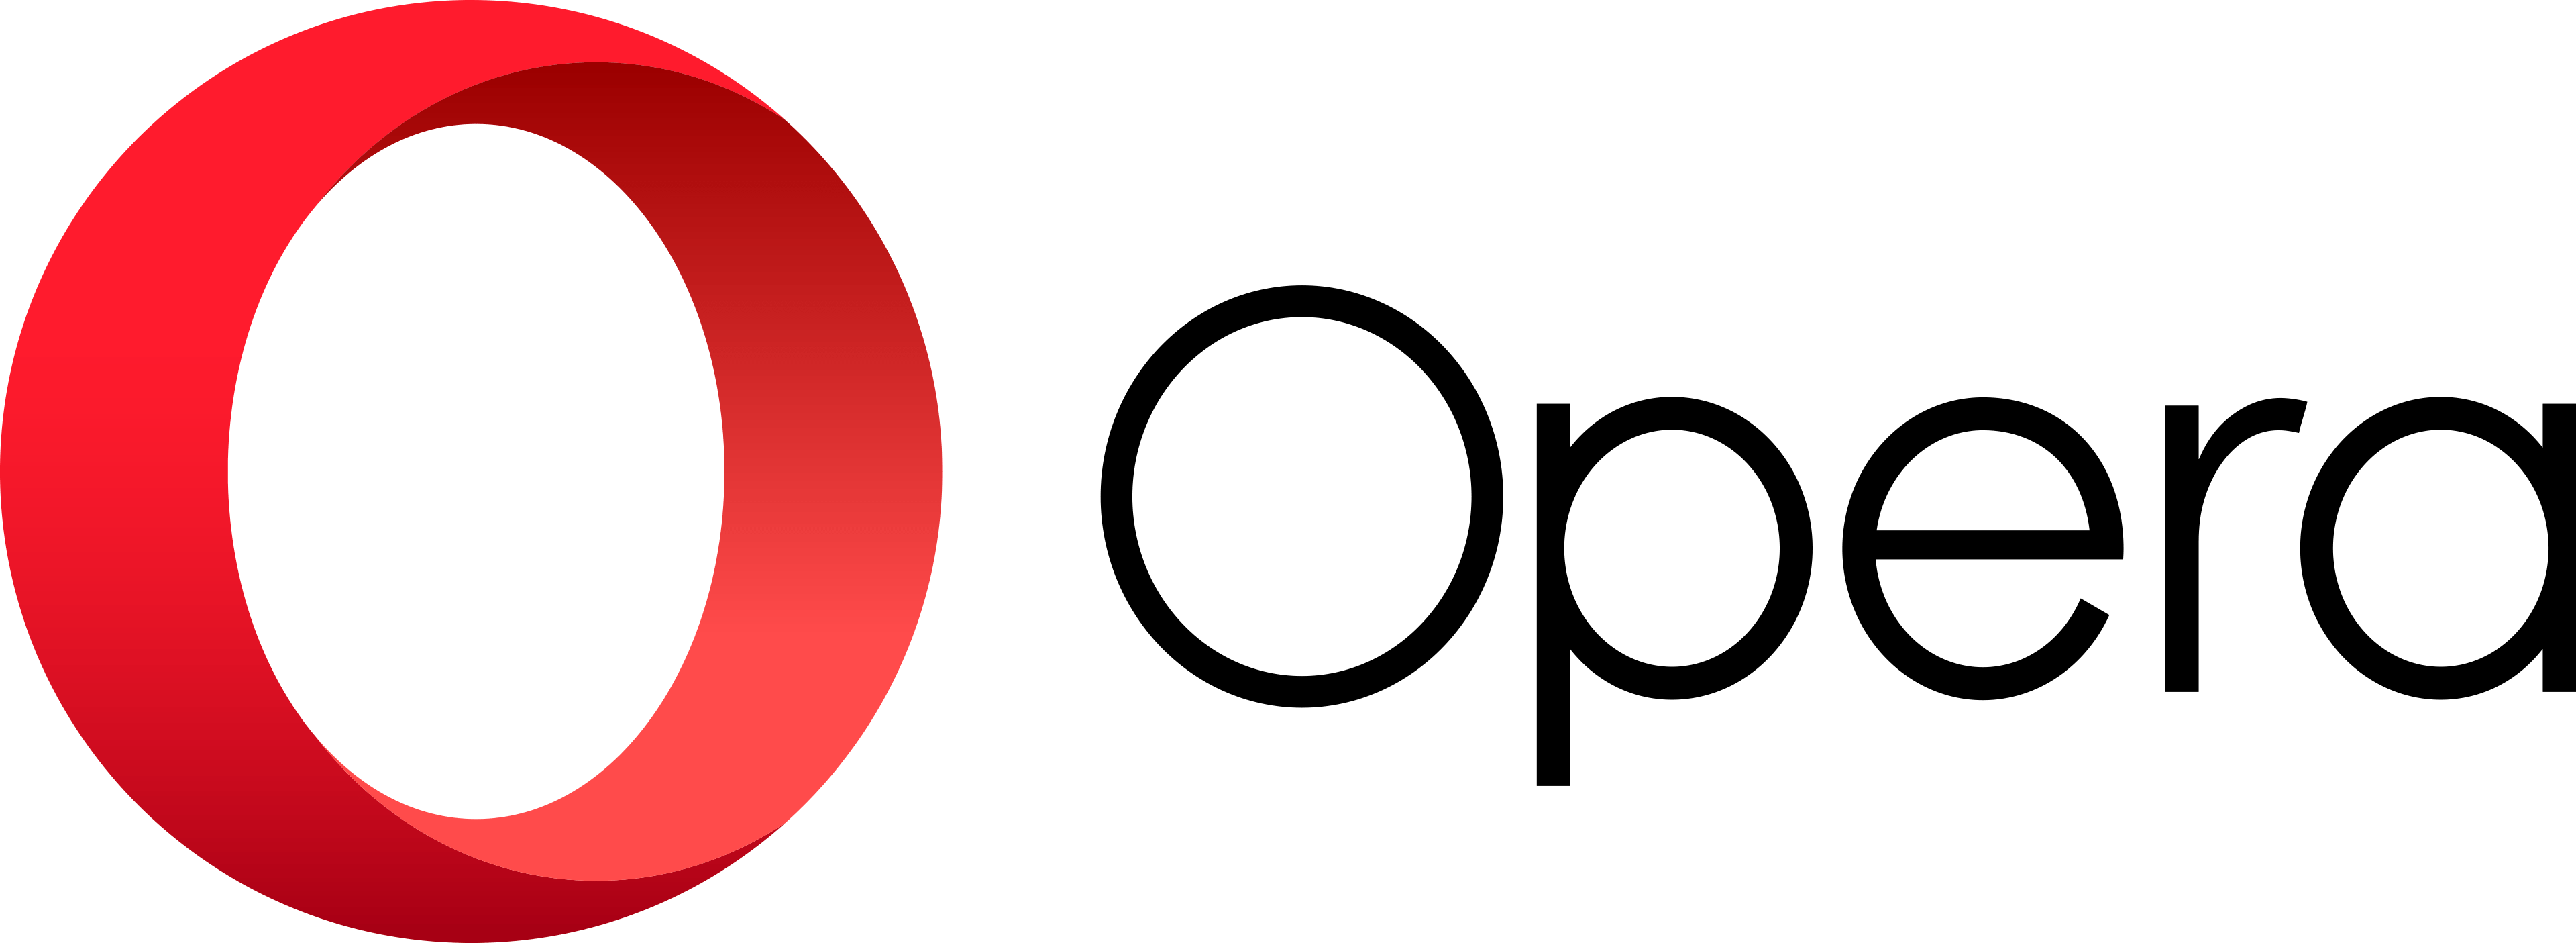 Old Opera Logo - Facebook Flat Vector Logo Download SEEKLOGO Free Logo Image